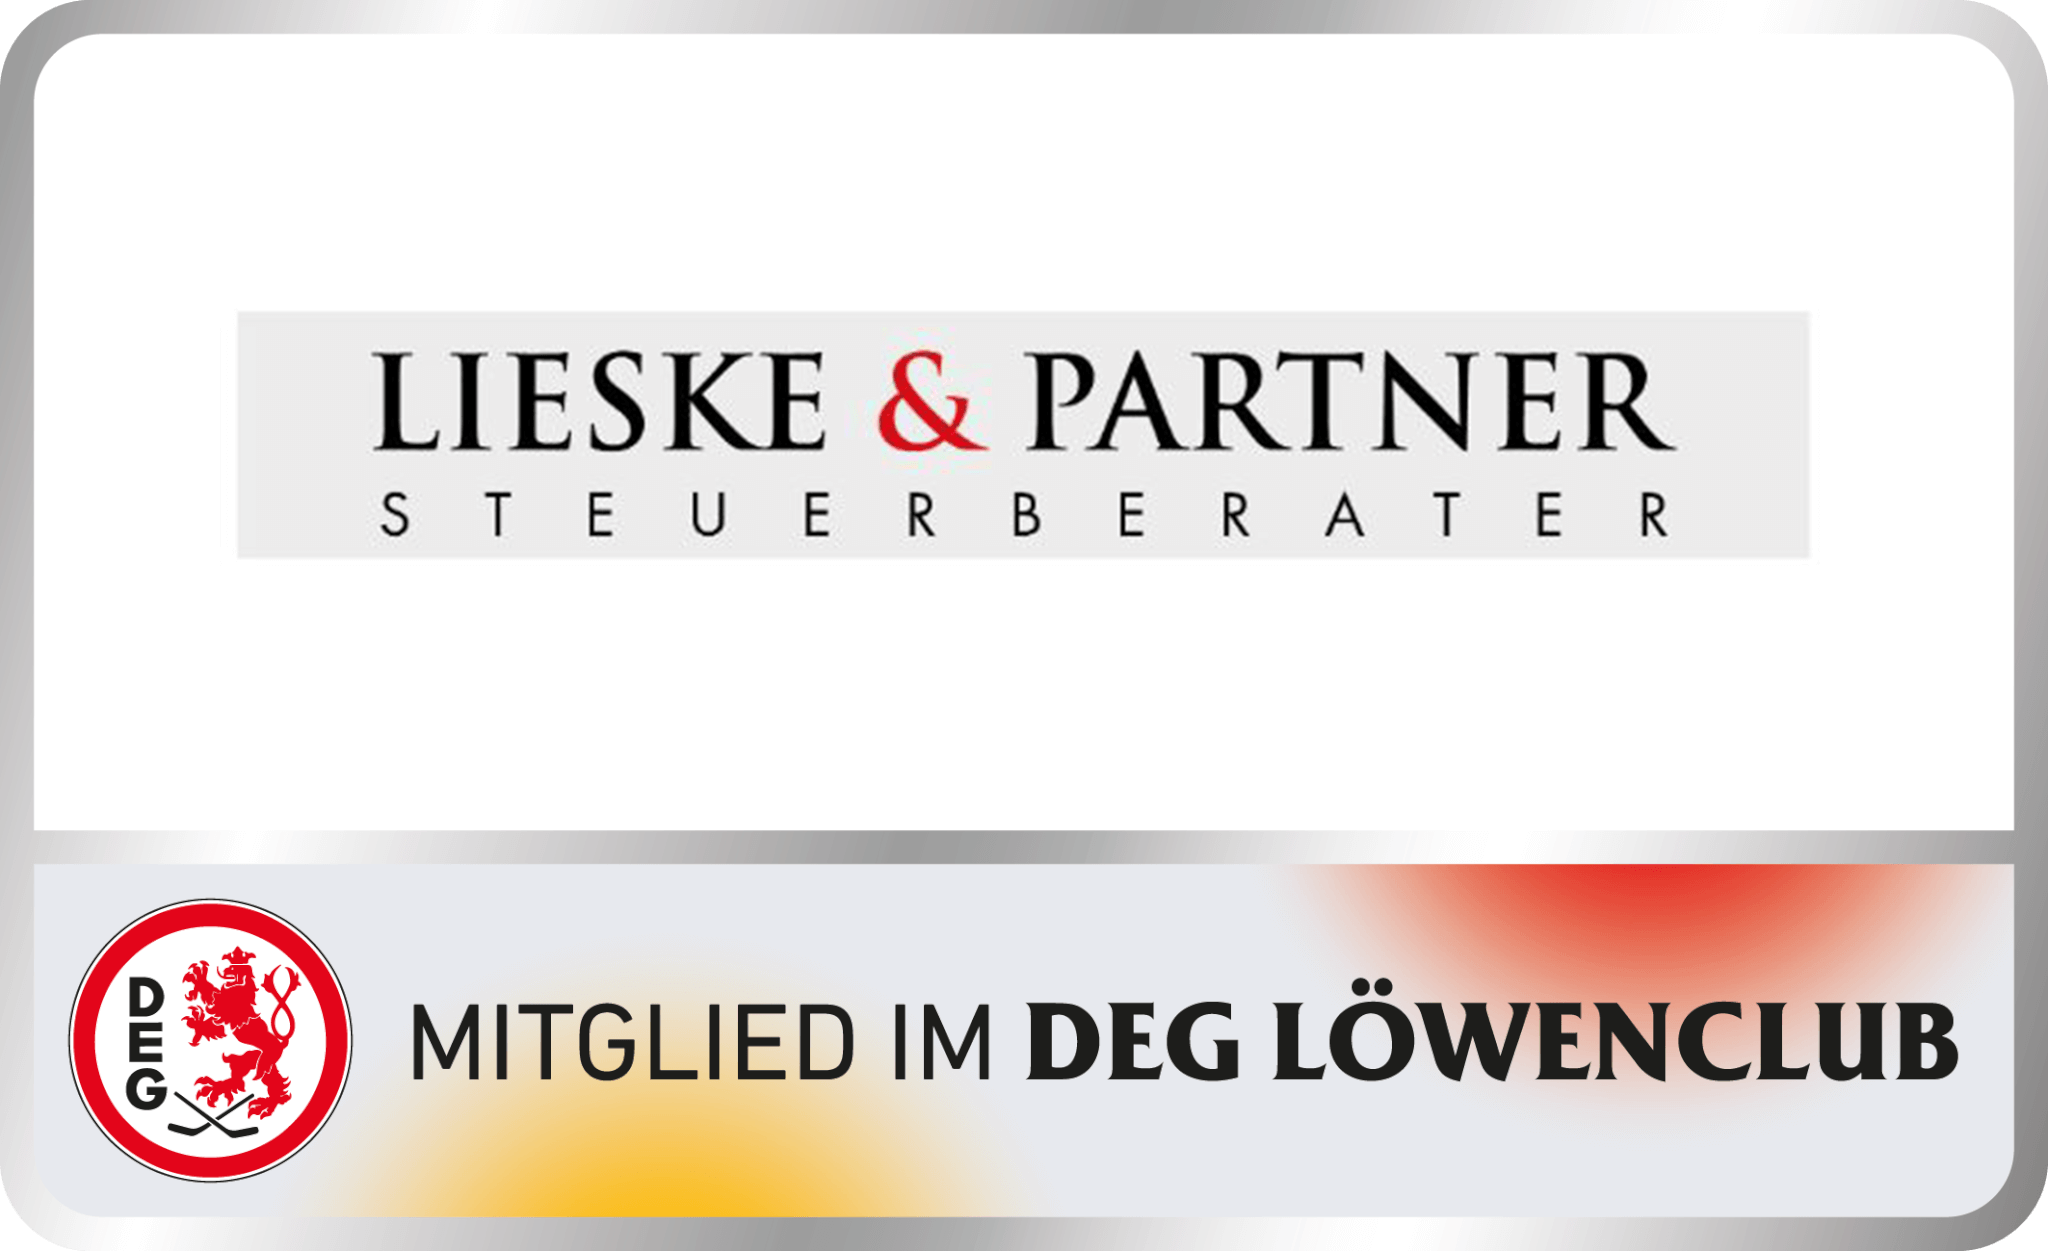 http://www.lieske-partner.de/